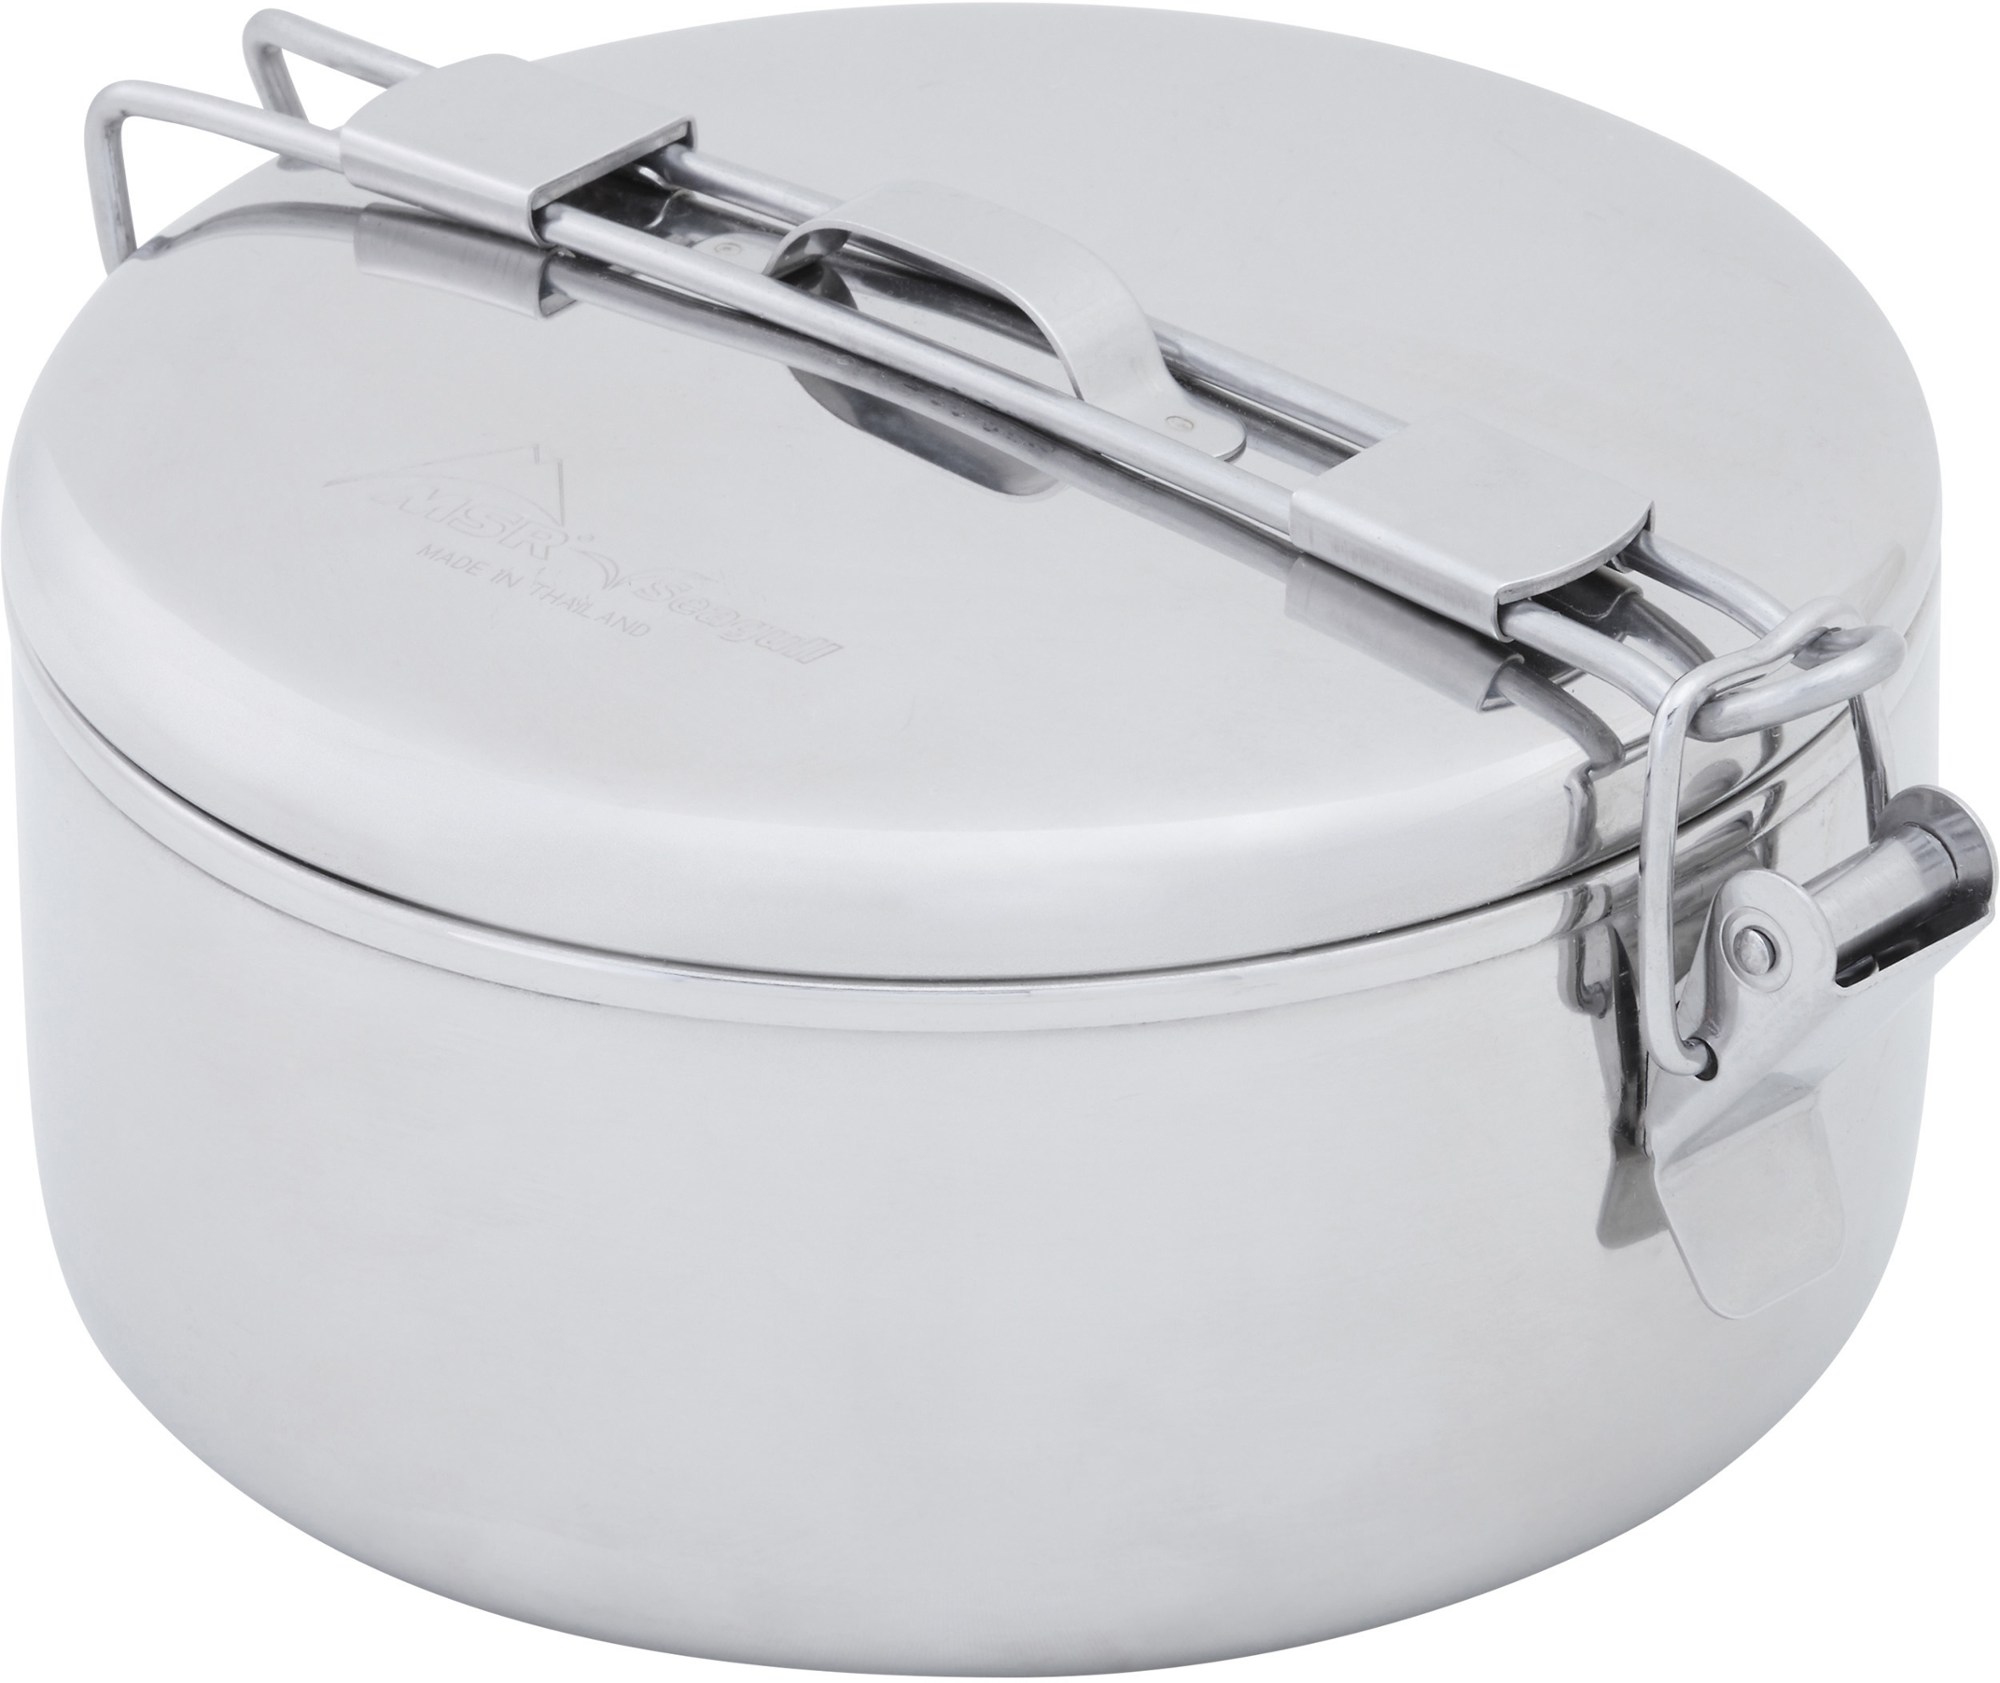 Горшок Alpine Stowaway Pot - 0,775 литра MSR набор для приготовления пищи flex 3 system msr черный